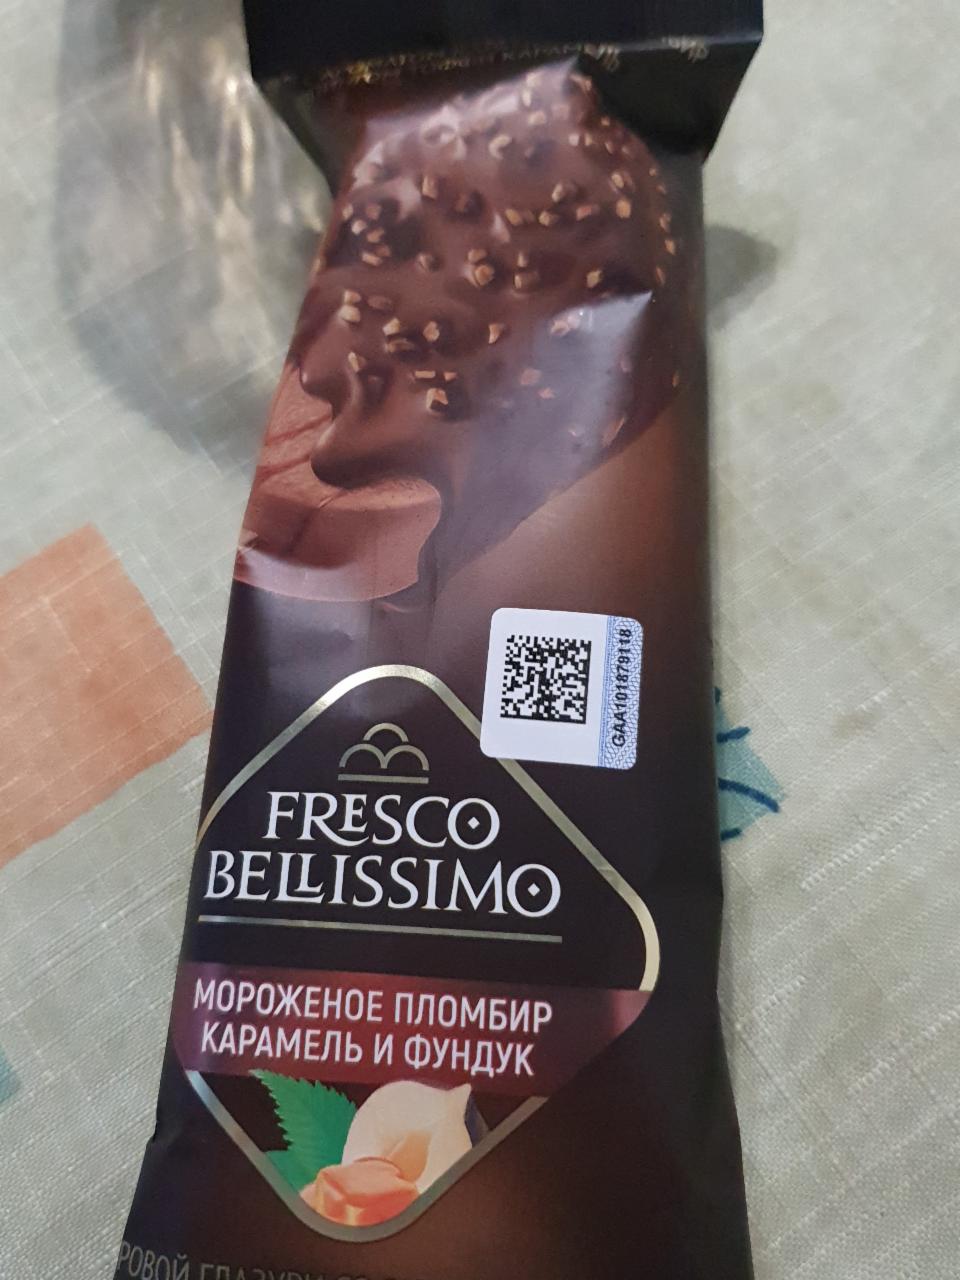 Фото - Мороженое пломбир карамель фундук Fresco Bellissimo